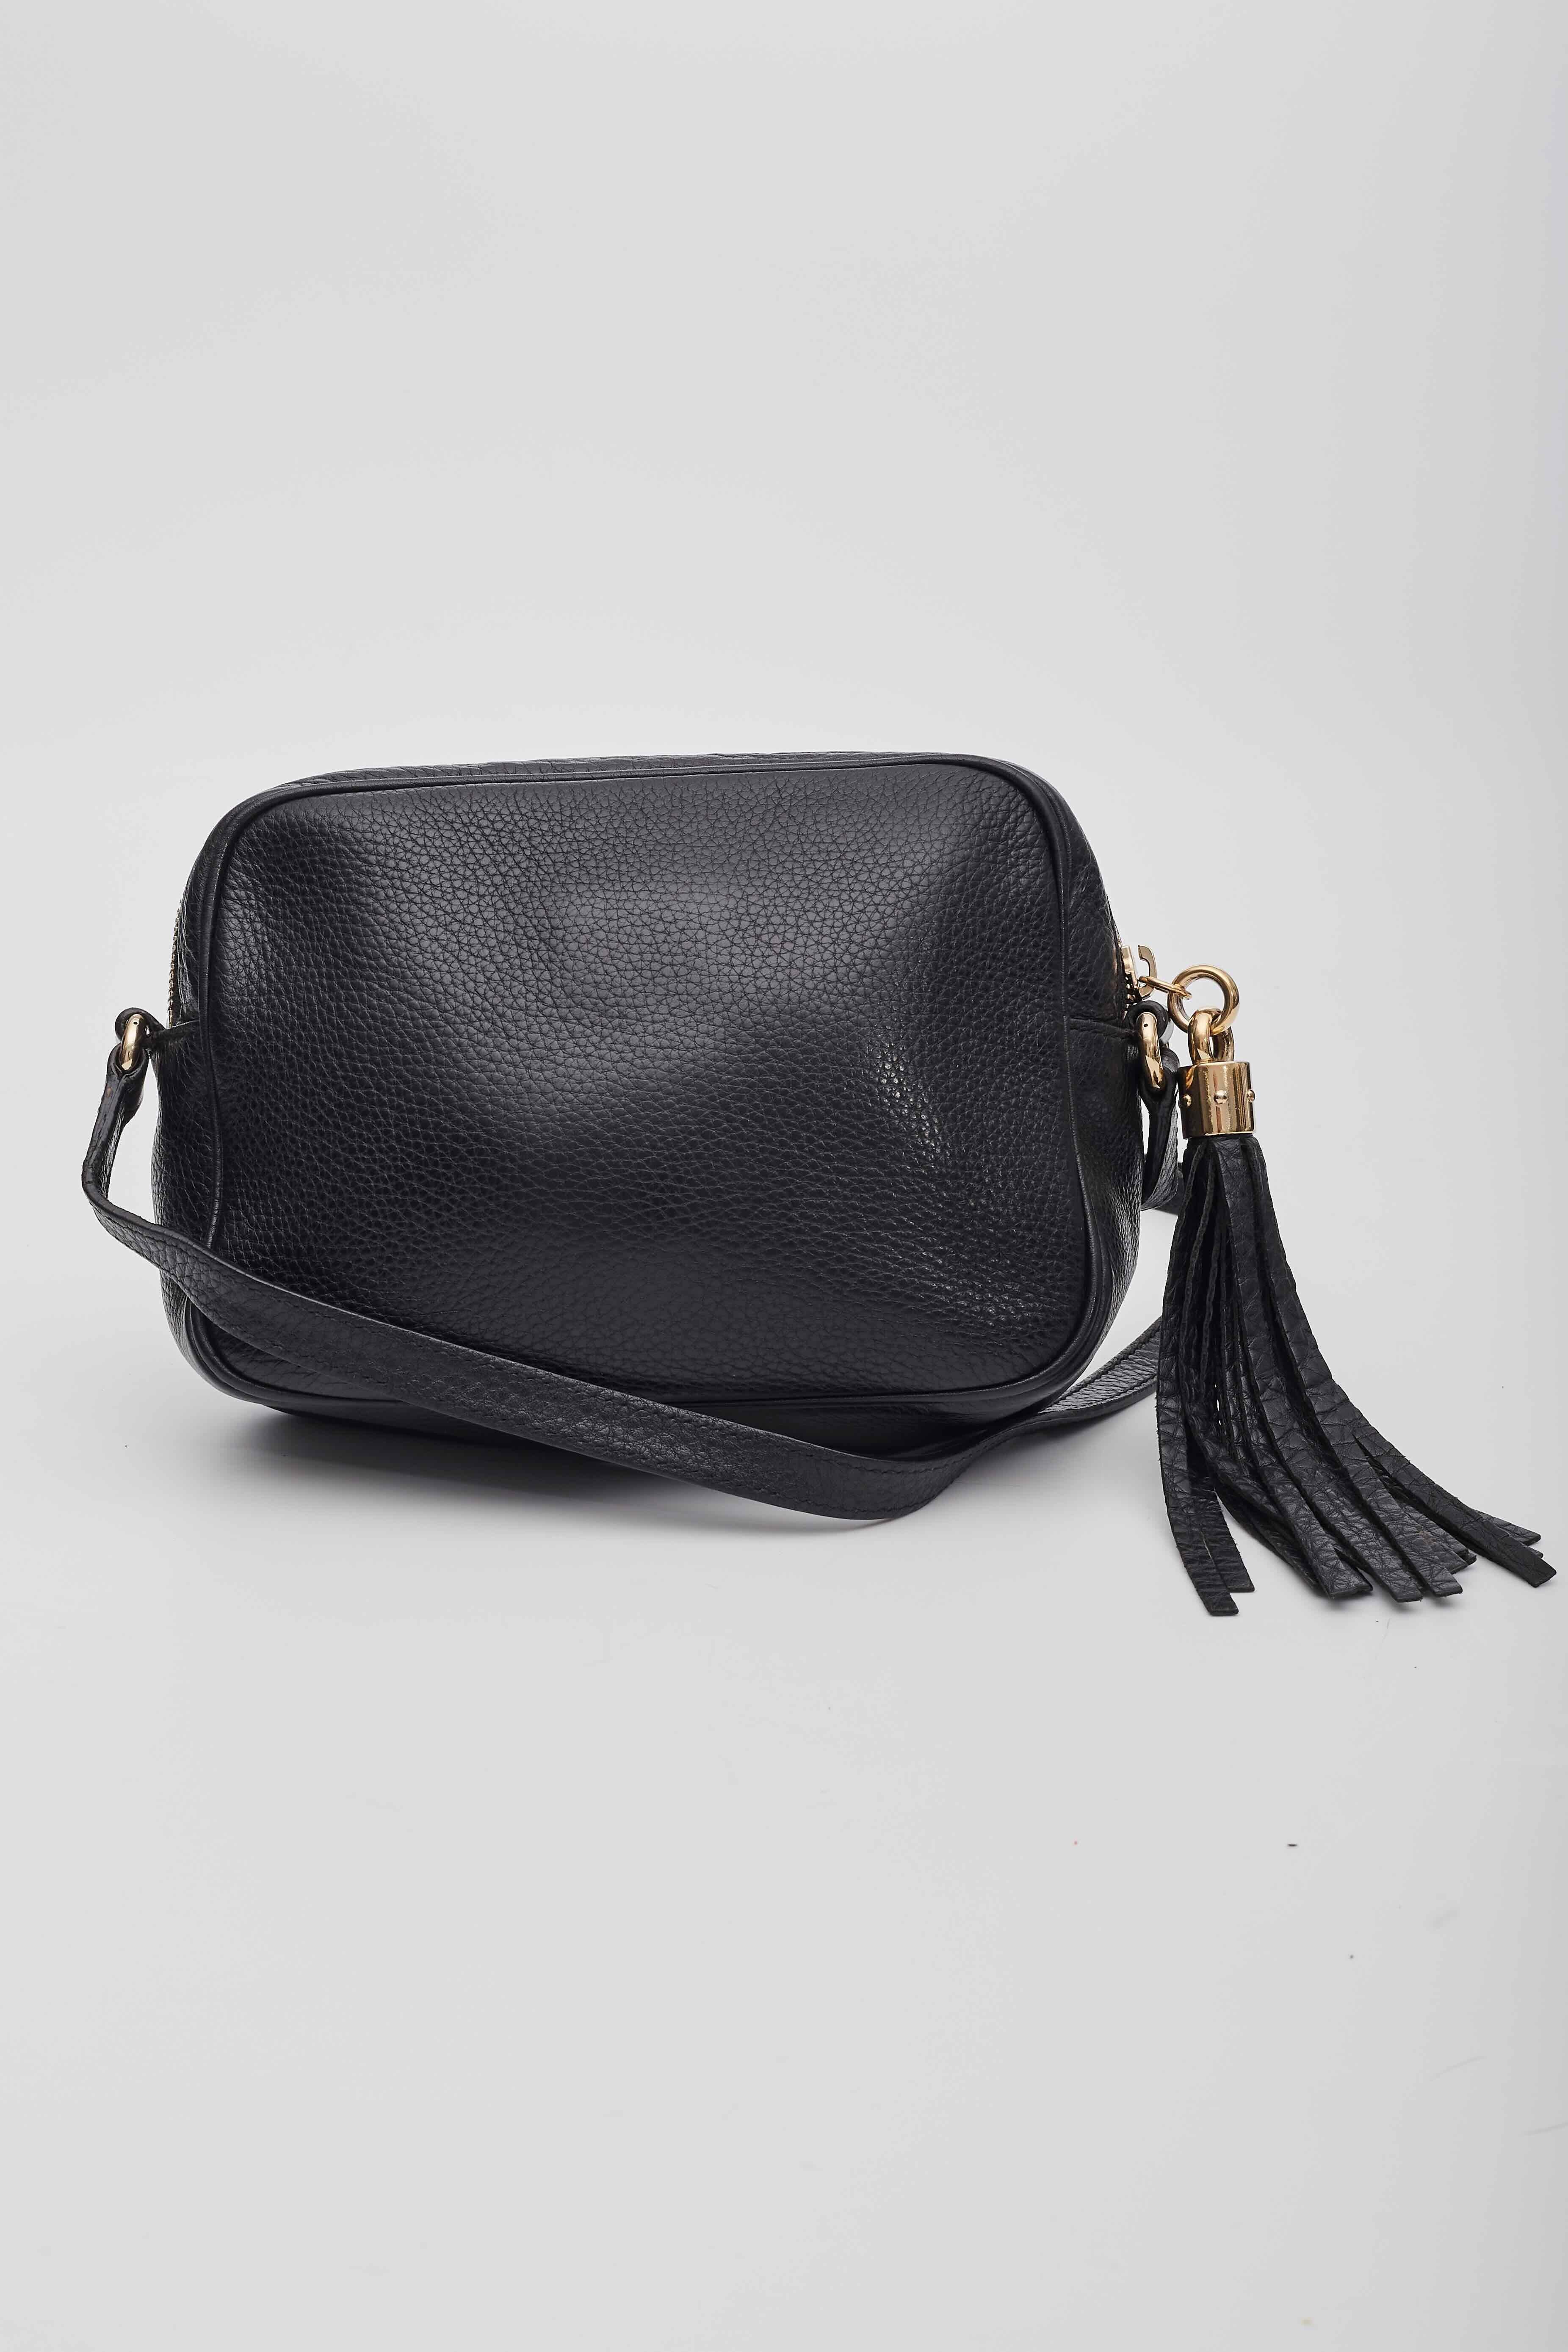 Ce sac à bandoulière est réalisé en cuir de veau velouté noir et porte le logo Gucci GG cousu sur le devant. Le sac est doté d'une bandoulière réglable en cuir et d'un fermoir en or poli. Les fermetures à glissière à pompon en cuir doré assorties